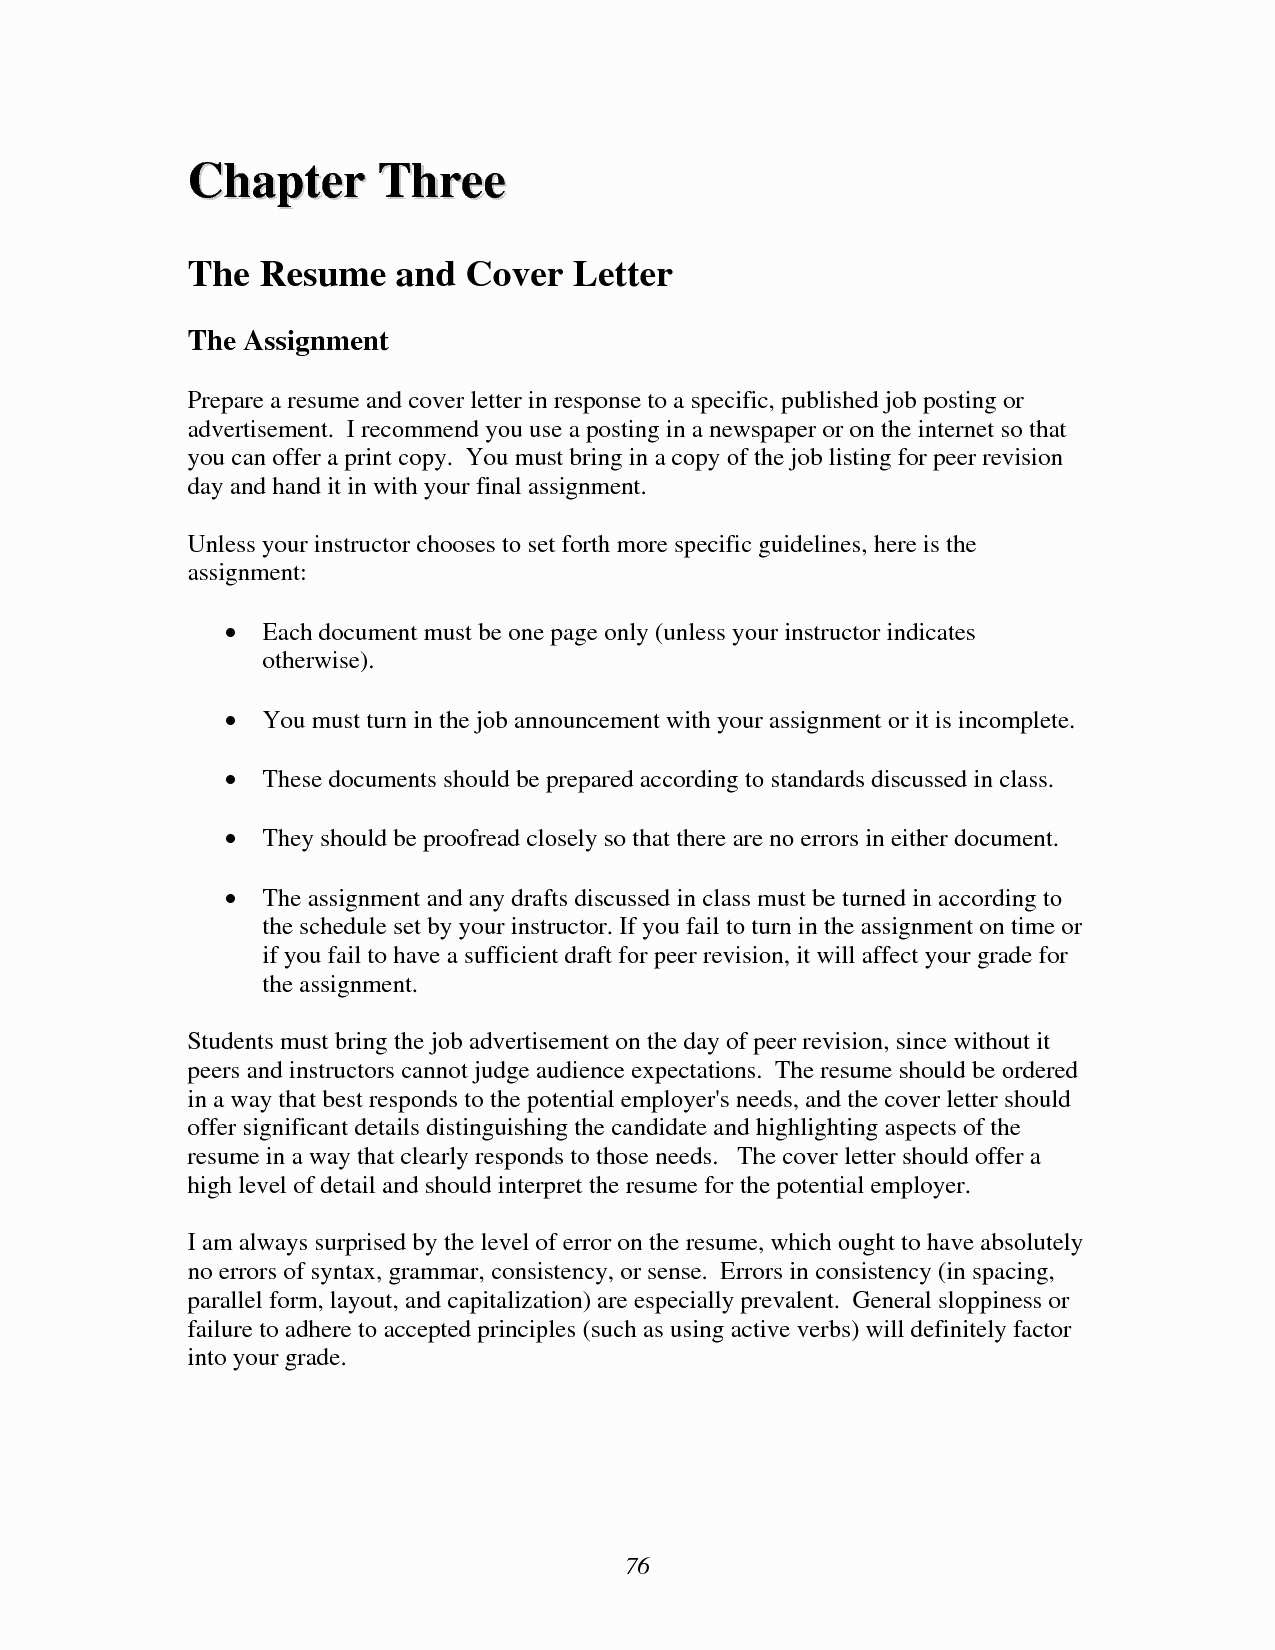 House Offer Letter Template - House Fer Letter Template Elegant Job Fer Letter Template Us Copy